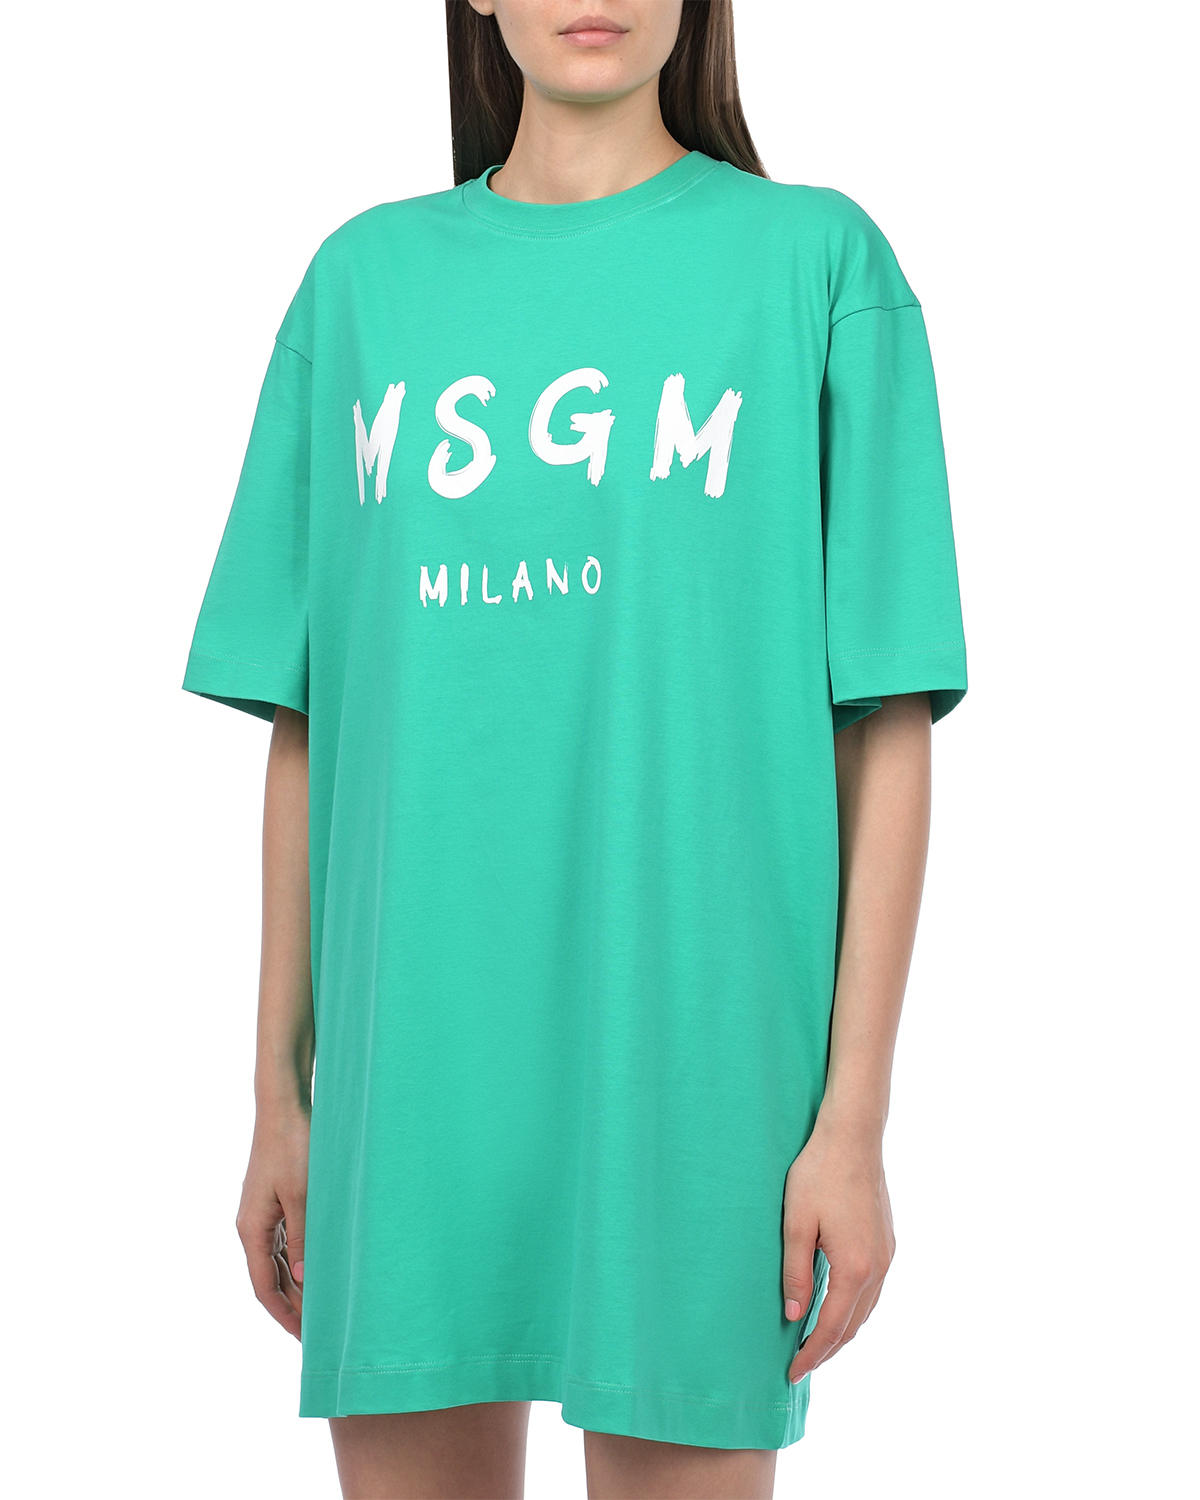 Платье-футболка с лого MSGM, размер 42, цвет зеленый - фото 5